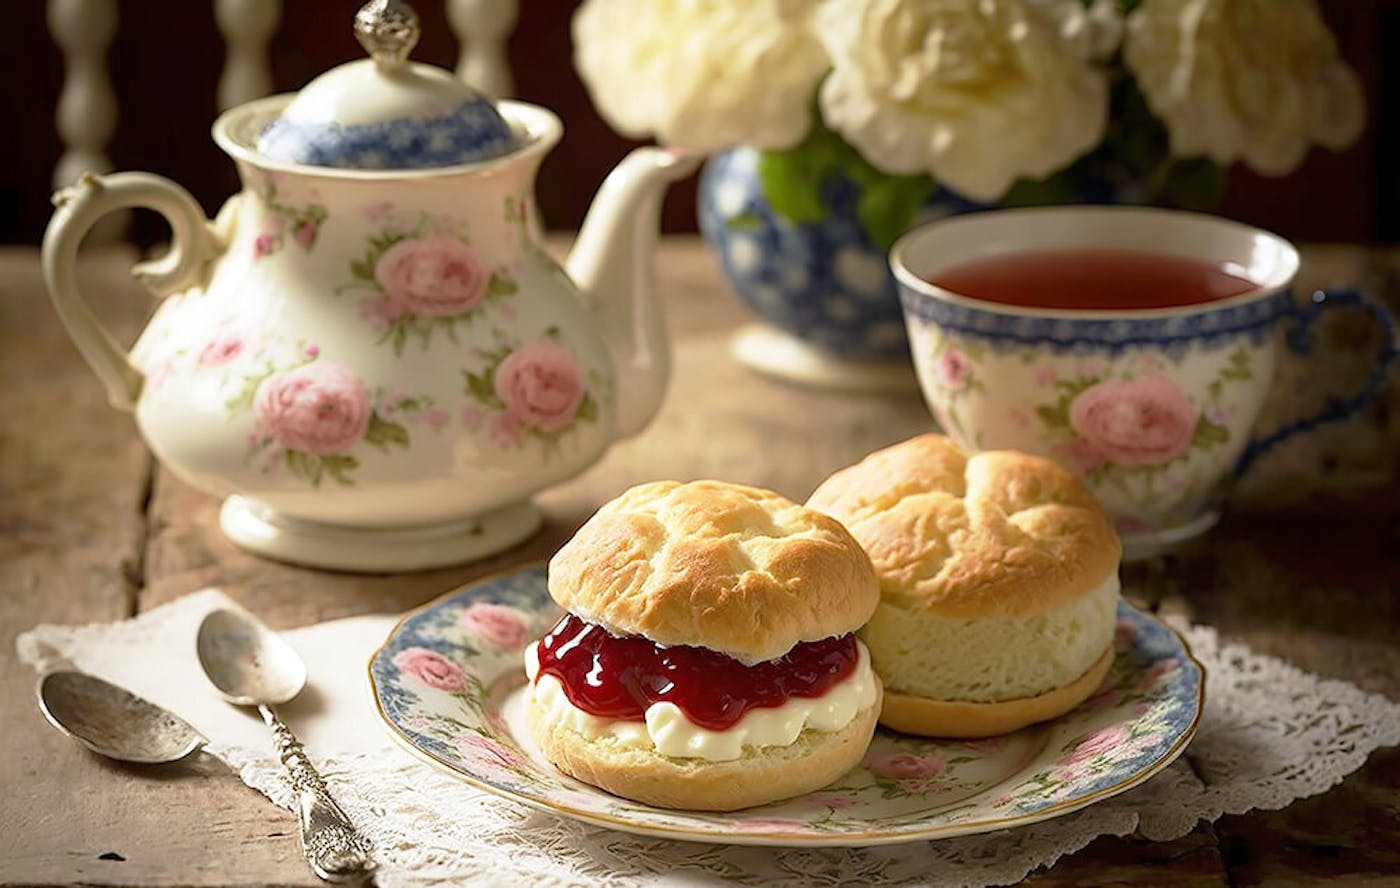 Ein elegantes Teeservice mit Tee steht neben einem Teller mit frischen Scones, die reichlich mit Butter und Marmelade bestrichen sind.